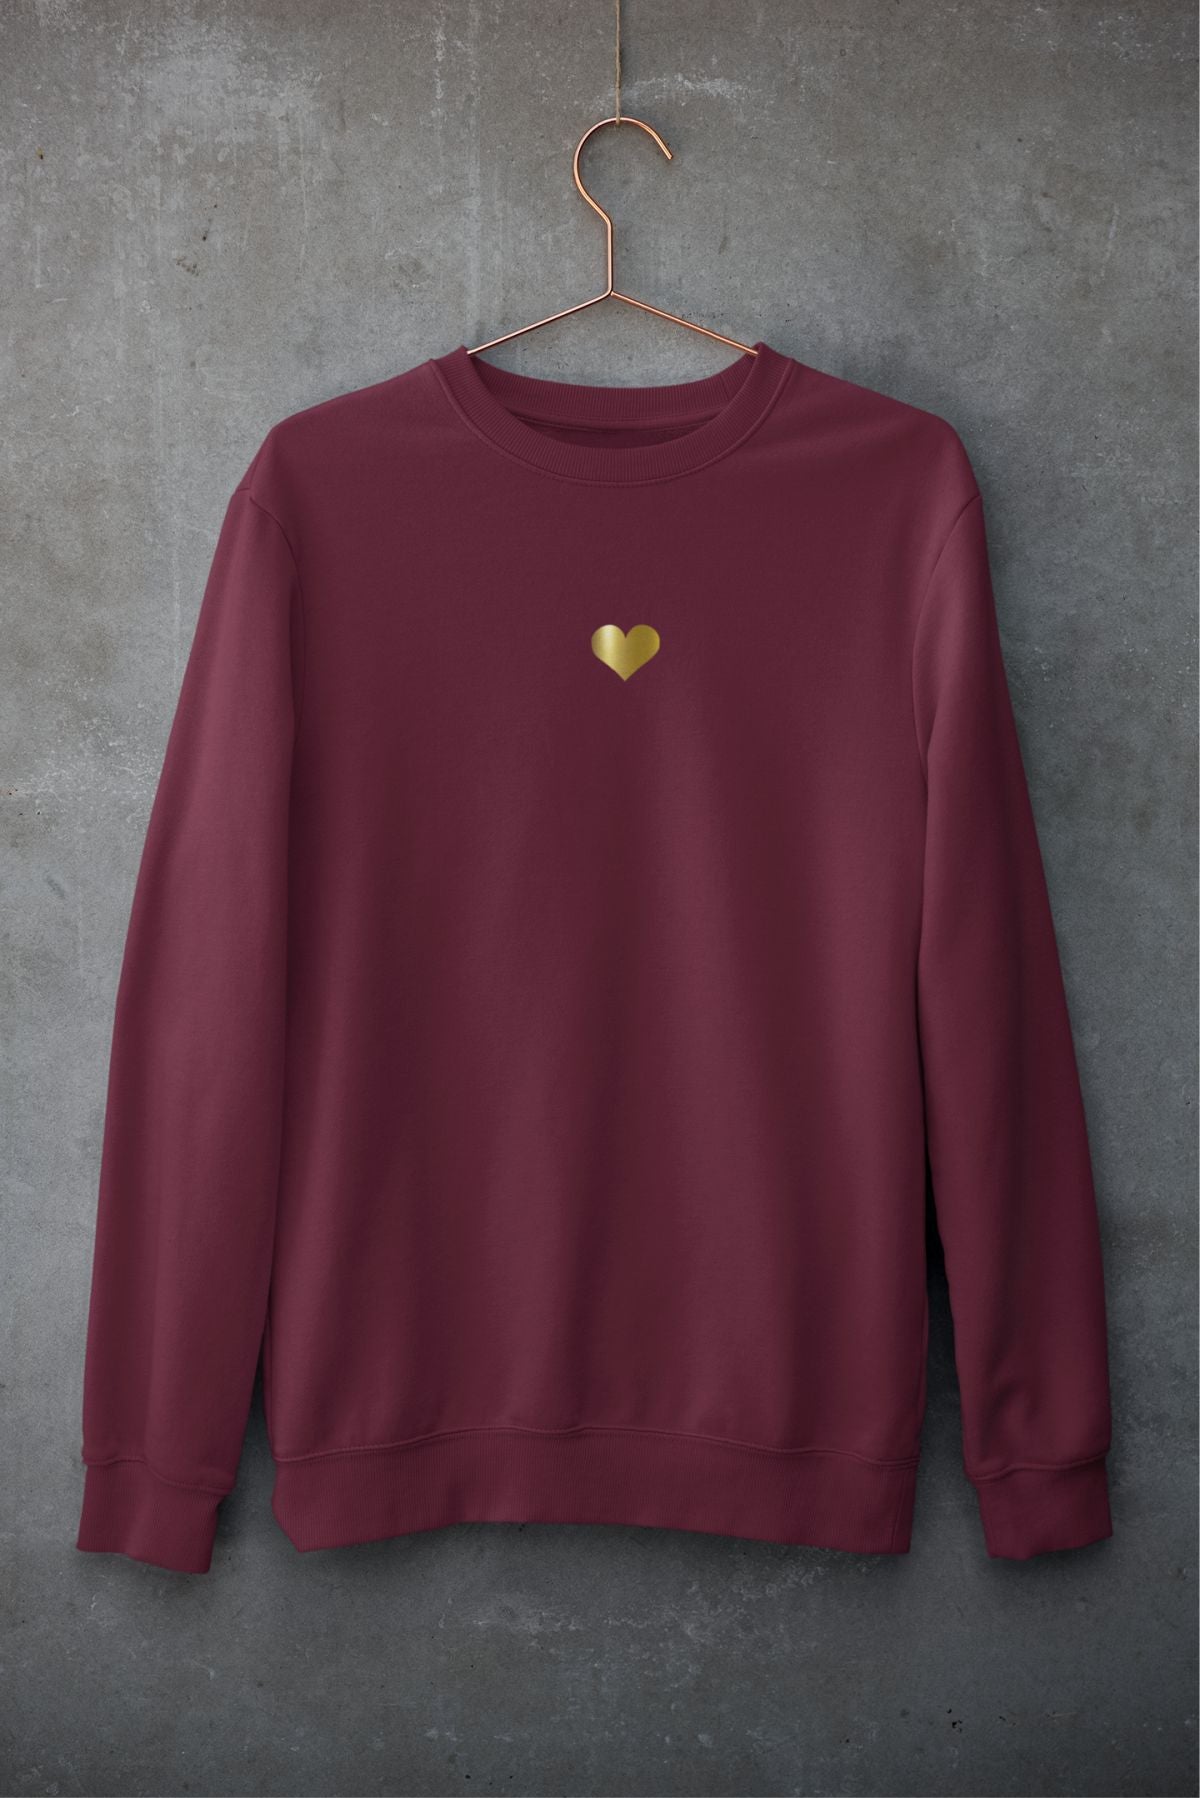 Burgundiškas UNISEX džemperis "Auksinė širdelė" PASKUTINIAI VIENETAI (Russel)